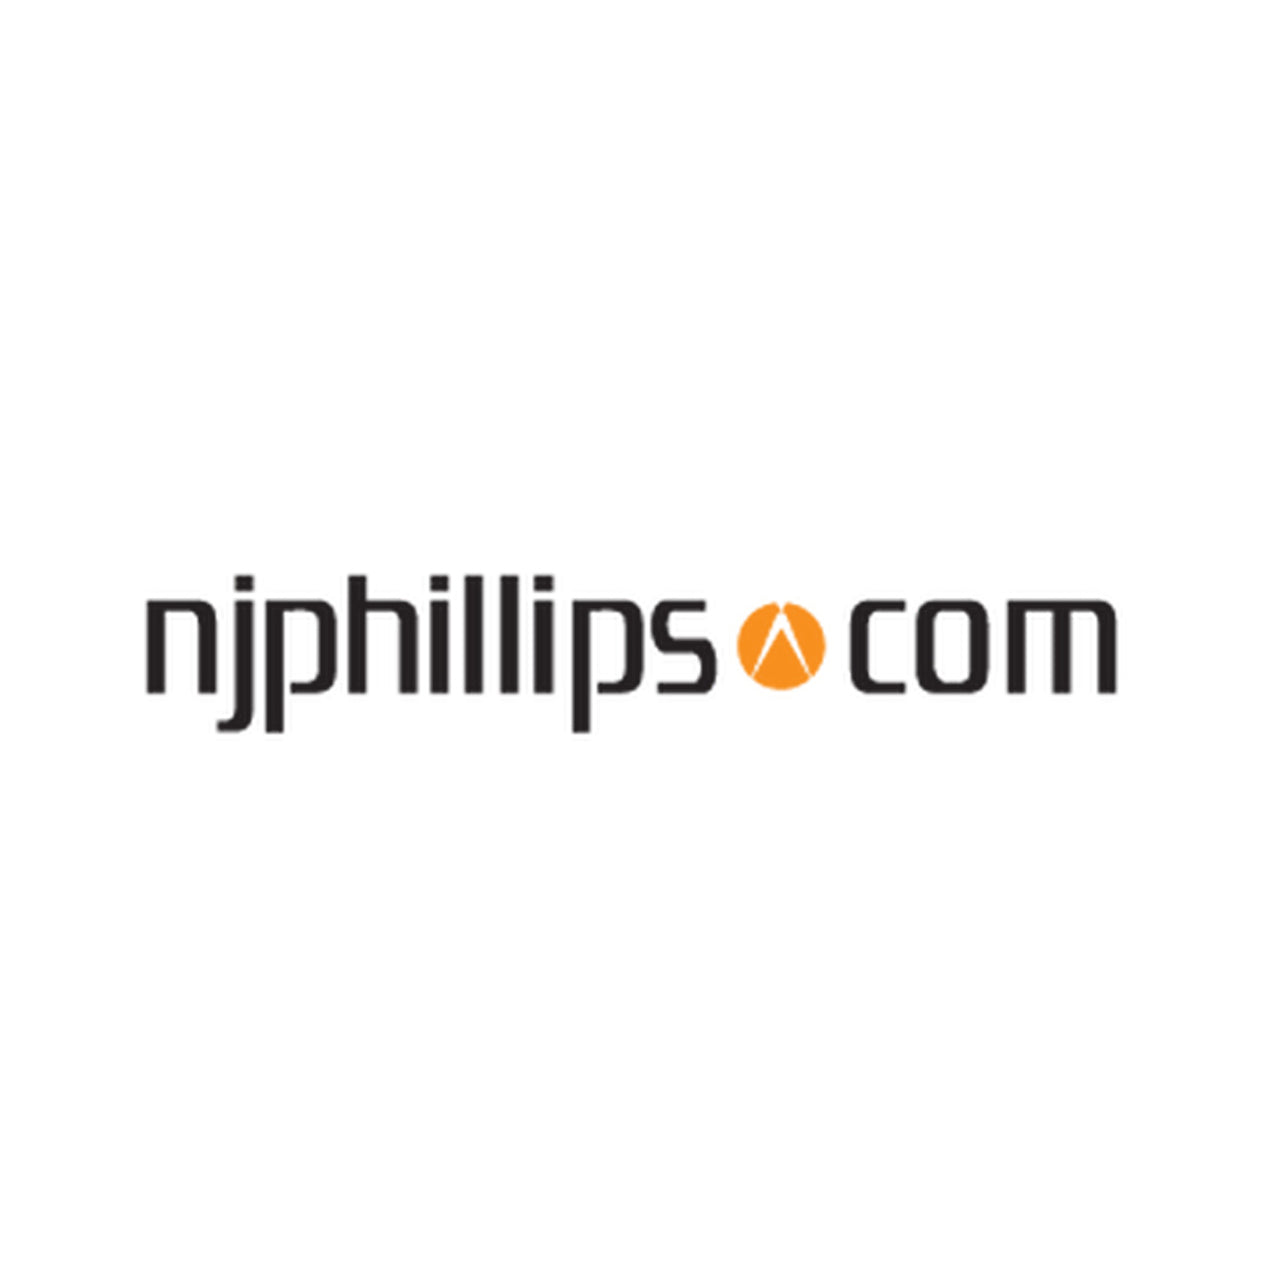 N.j. Phillips 2.5L Backpack W/ Strap & Cap - Drug Administration N.j. Phillips - Canada